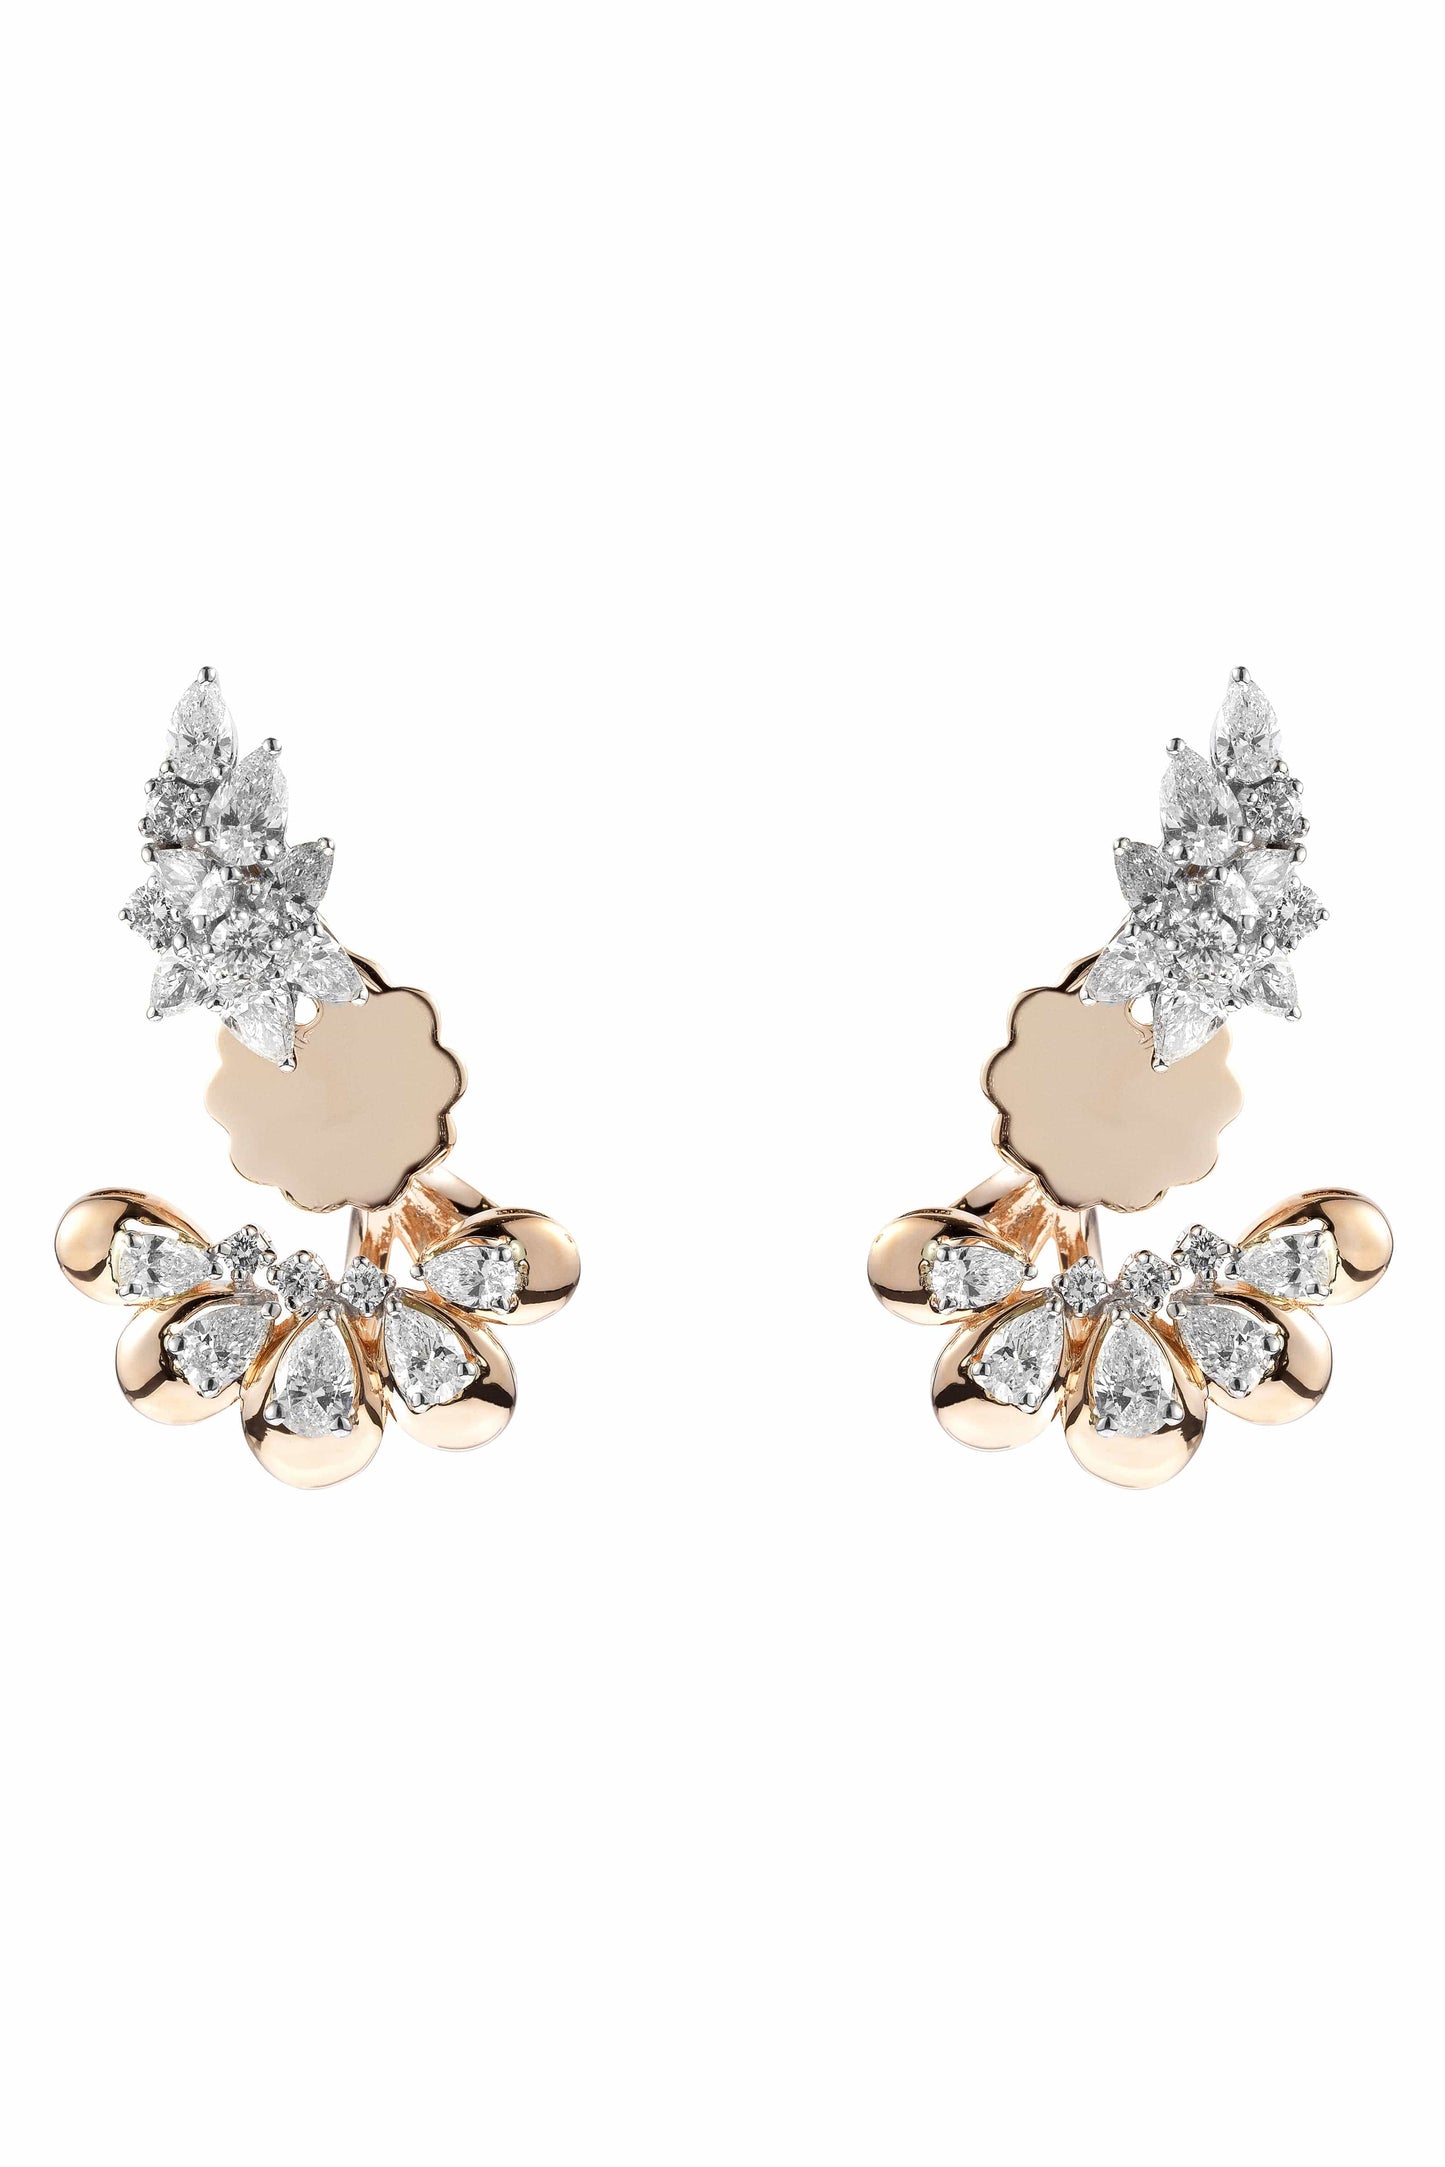 YEPREM JEWELLERY-Diamond Pear Fan Earrings-WHITE GOLD